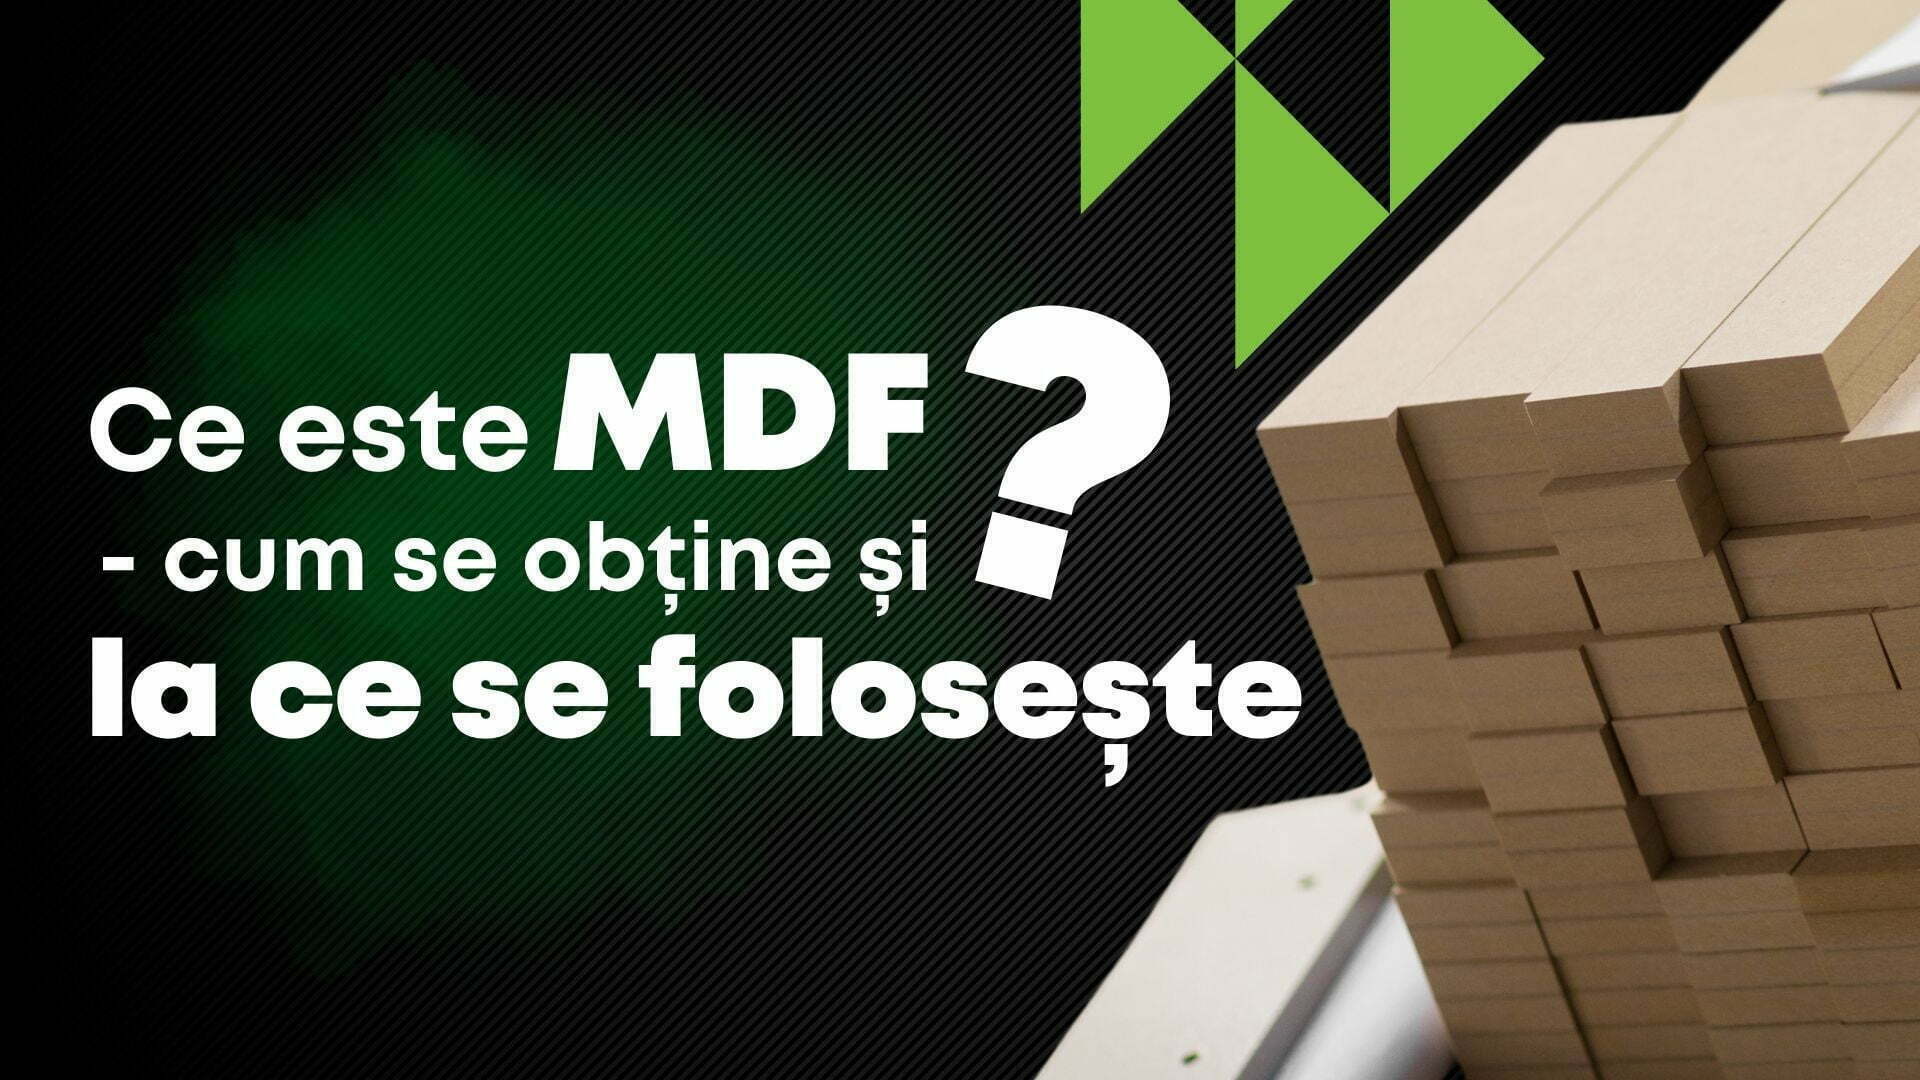 Ce este MDF, cum se obține și la ce se folosește? la Danibrum